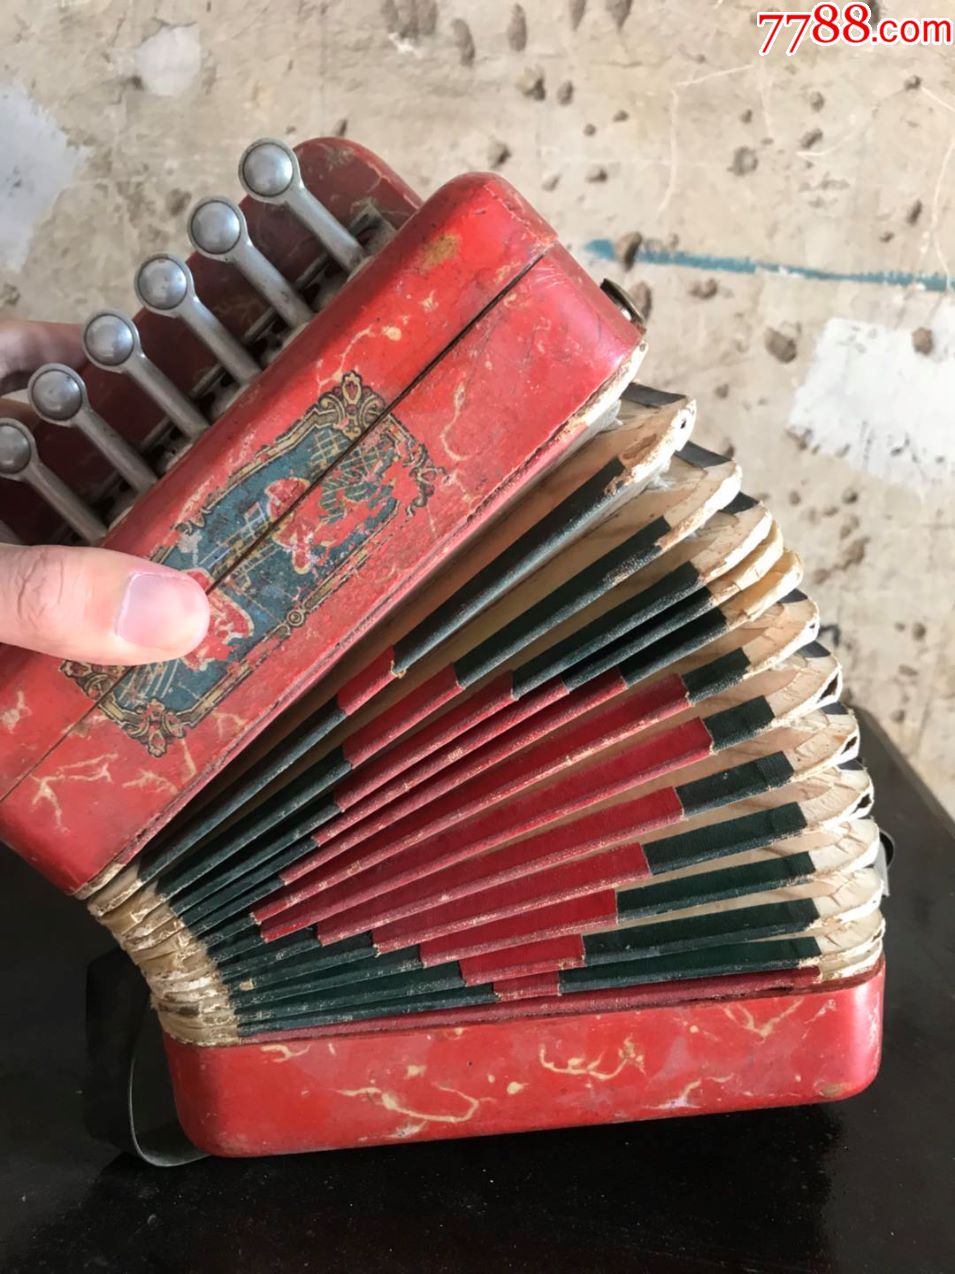 50年代儿童玩具手风琴,地方国营上海国光口琴厂,老玩具